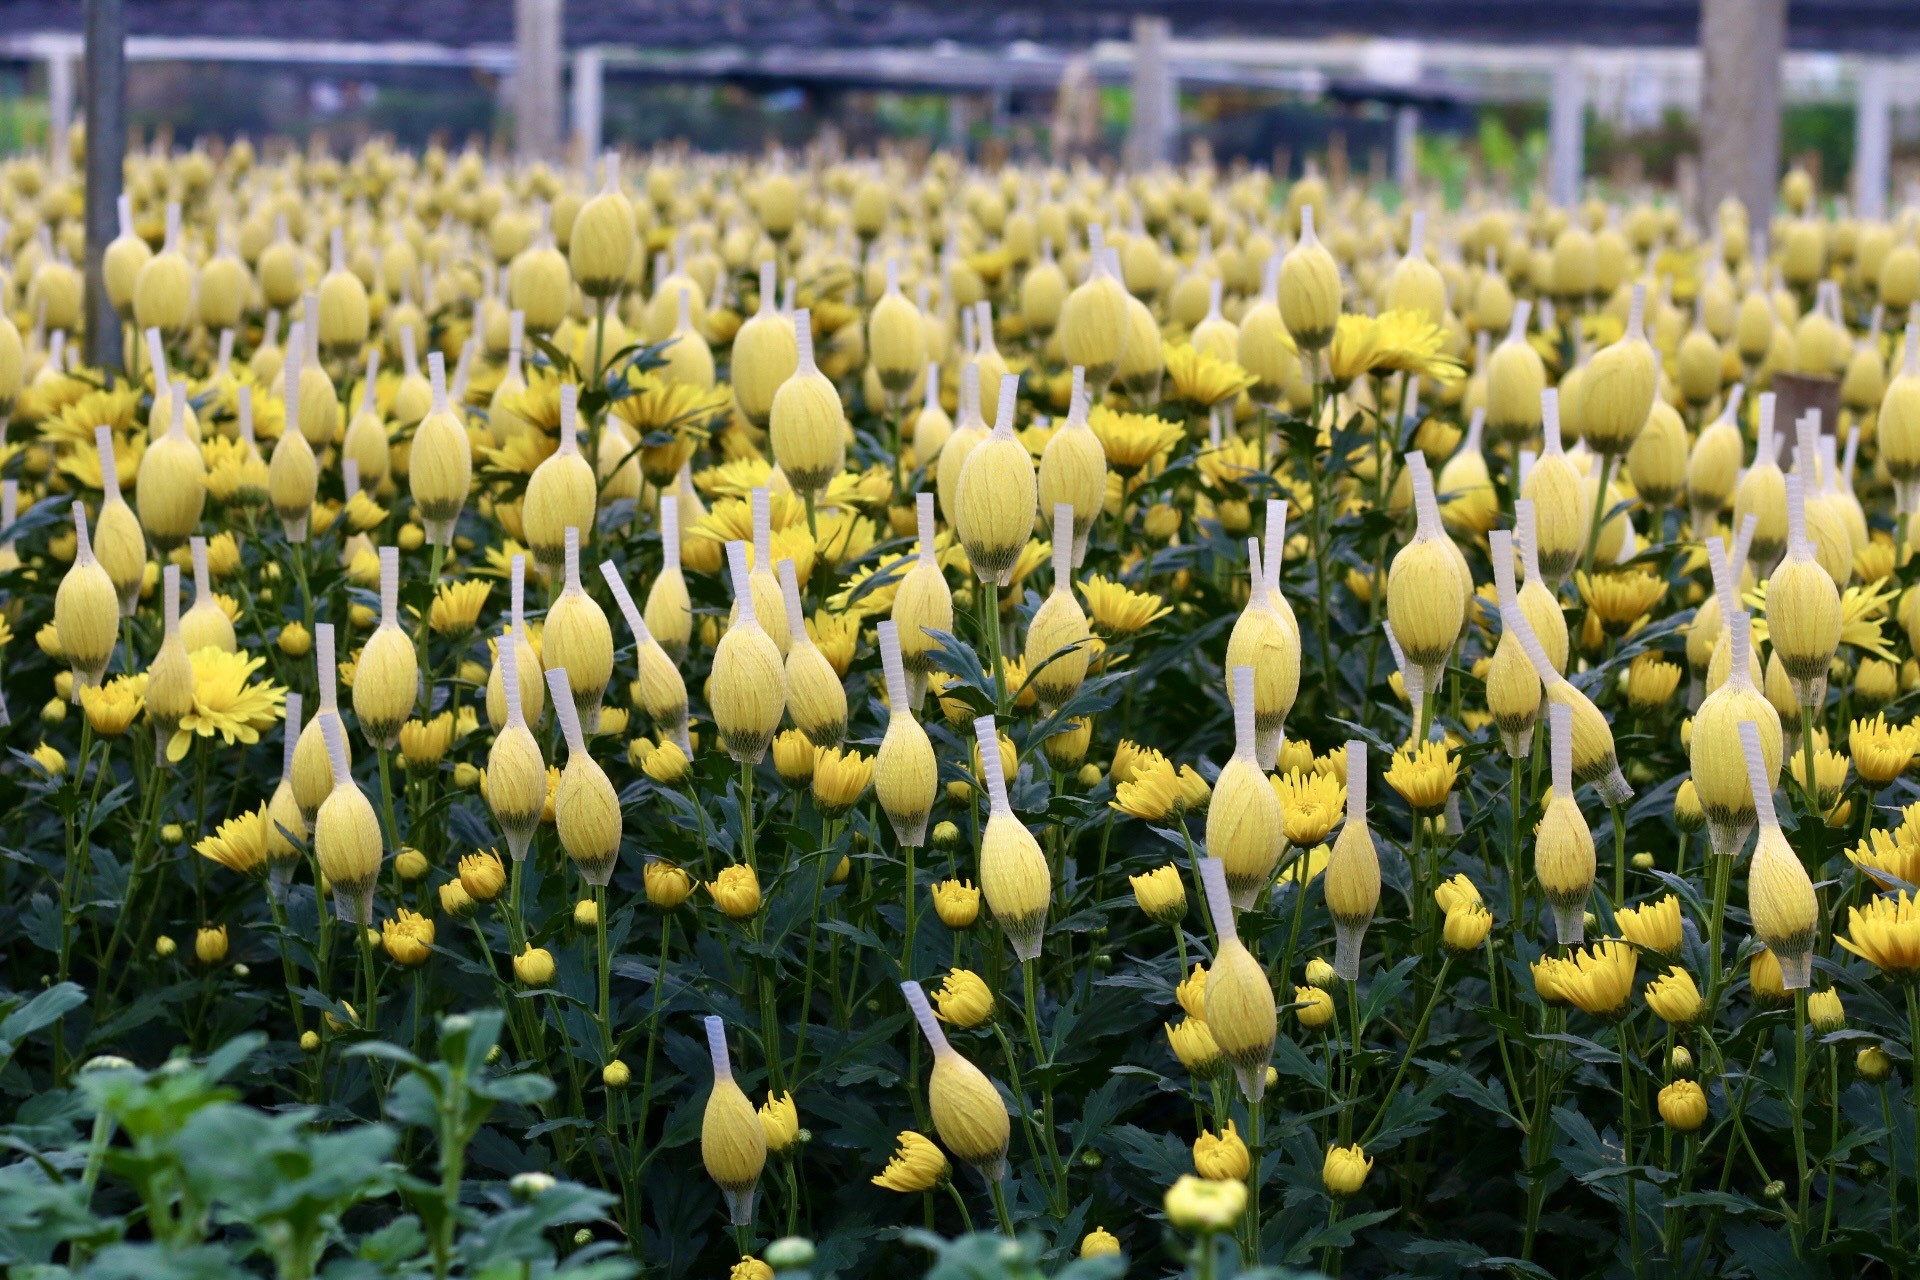 Thủ phủ hoa lớn nhất xứ Thanh: Người làm vườn trông chờ vụ Tết để 'gỡ vốn' - Ảnh 10.